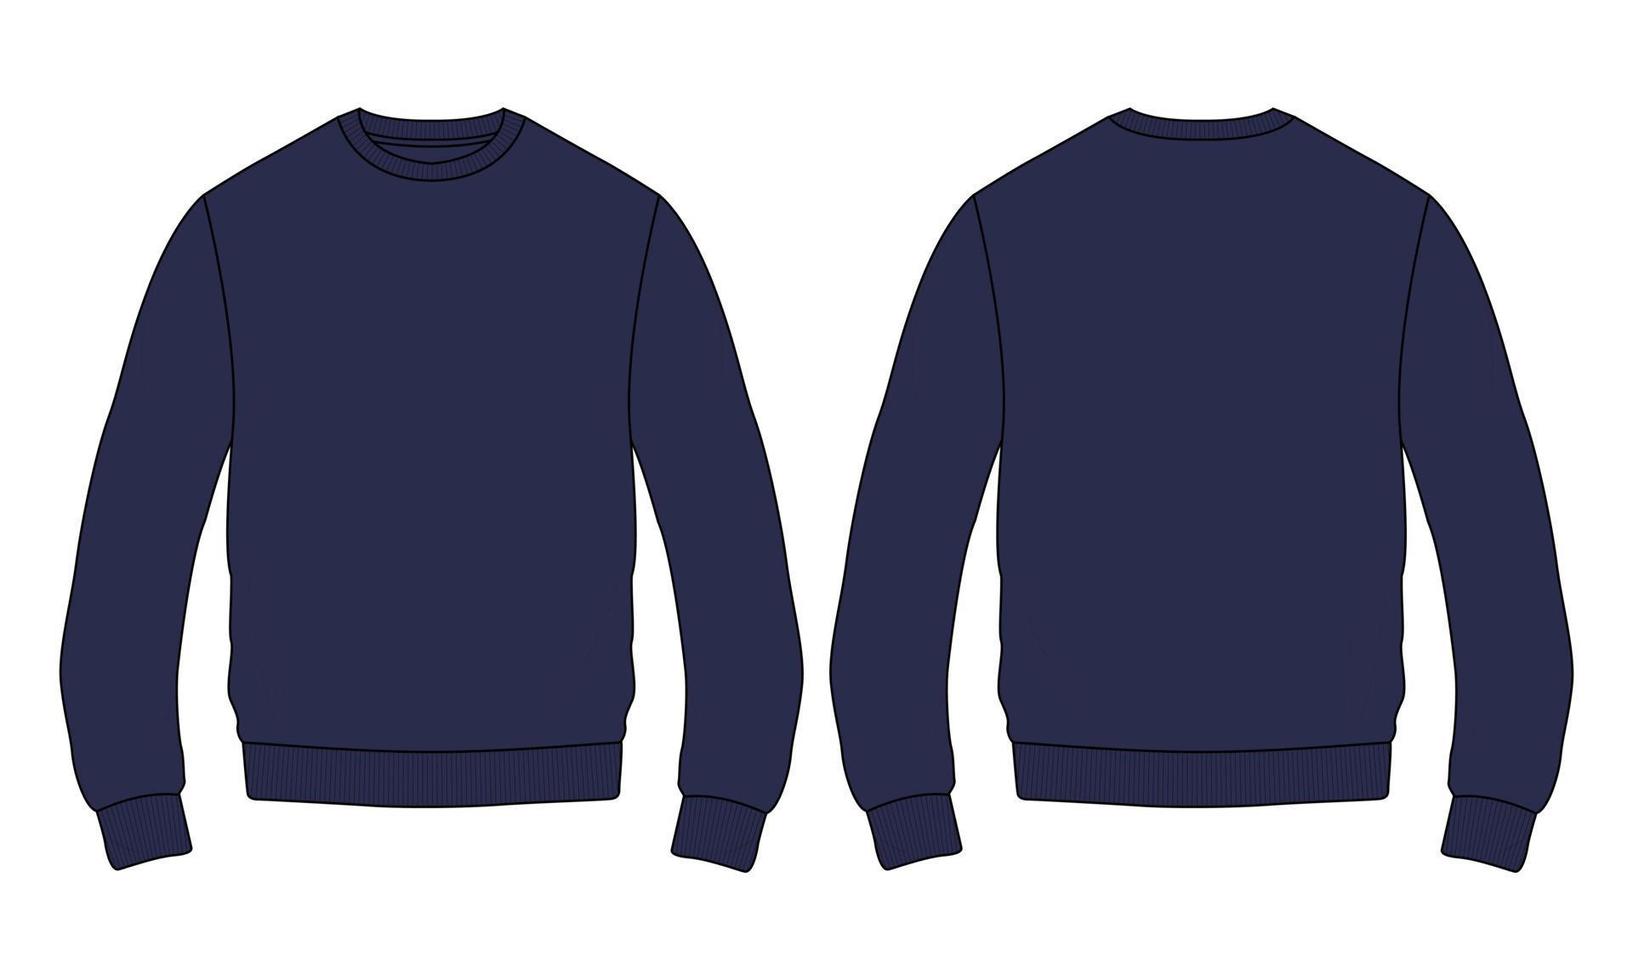 Rundhals-Langarm-Sweatshirt Mode flache Skizzen technische Zeichnung Vektor-Illustrationsvorlage für Herren. kleid kleid design marine farbe mockup. Pullover Modedesign isoliert auf weiss vektor